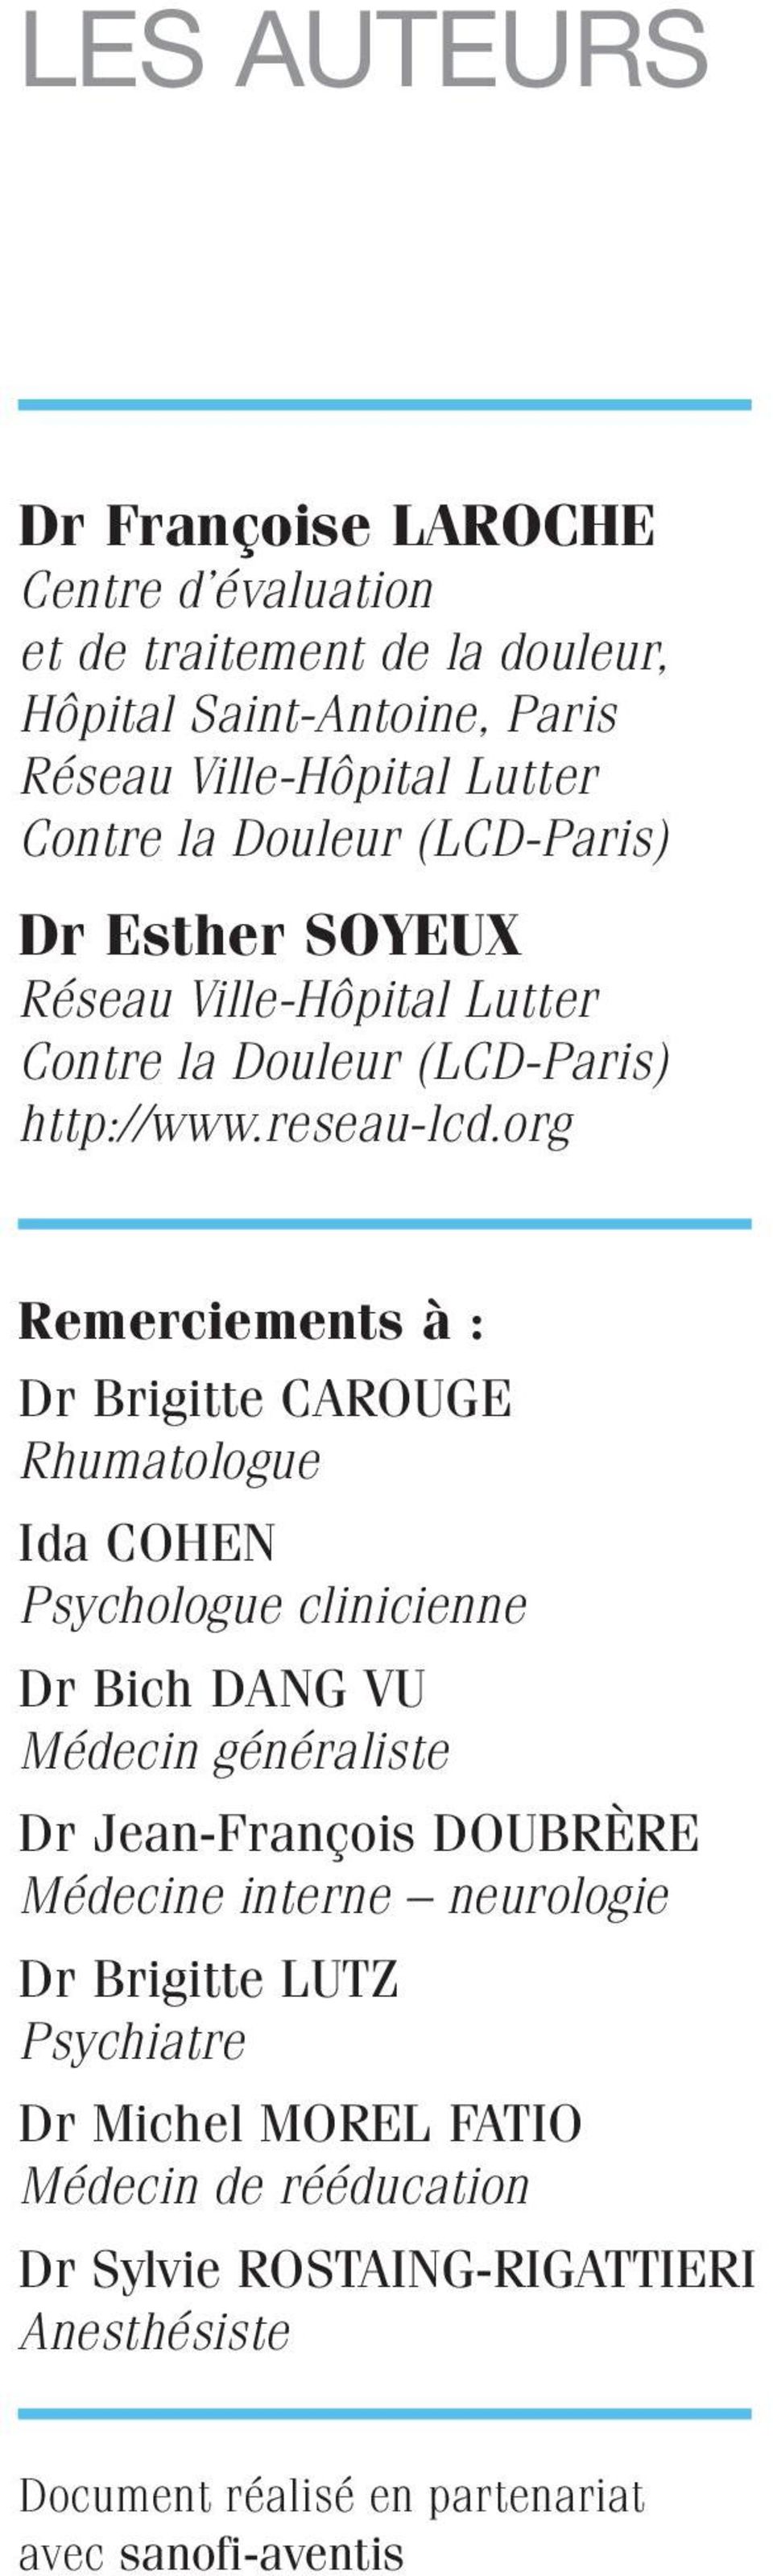 org Remerciements à : Dr Brigitte CAROUGE Rhumatologue Ida COHEN Psychologue clinicienne Dr Bich DANG VU Médecin généraliste Dr Jean-François DOUBRÈRE